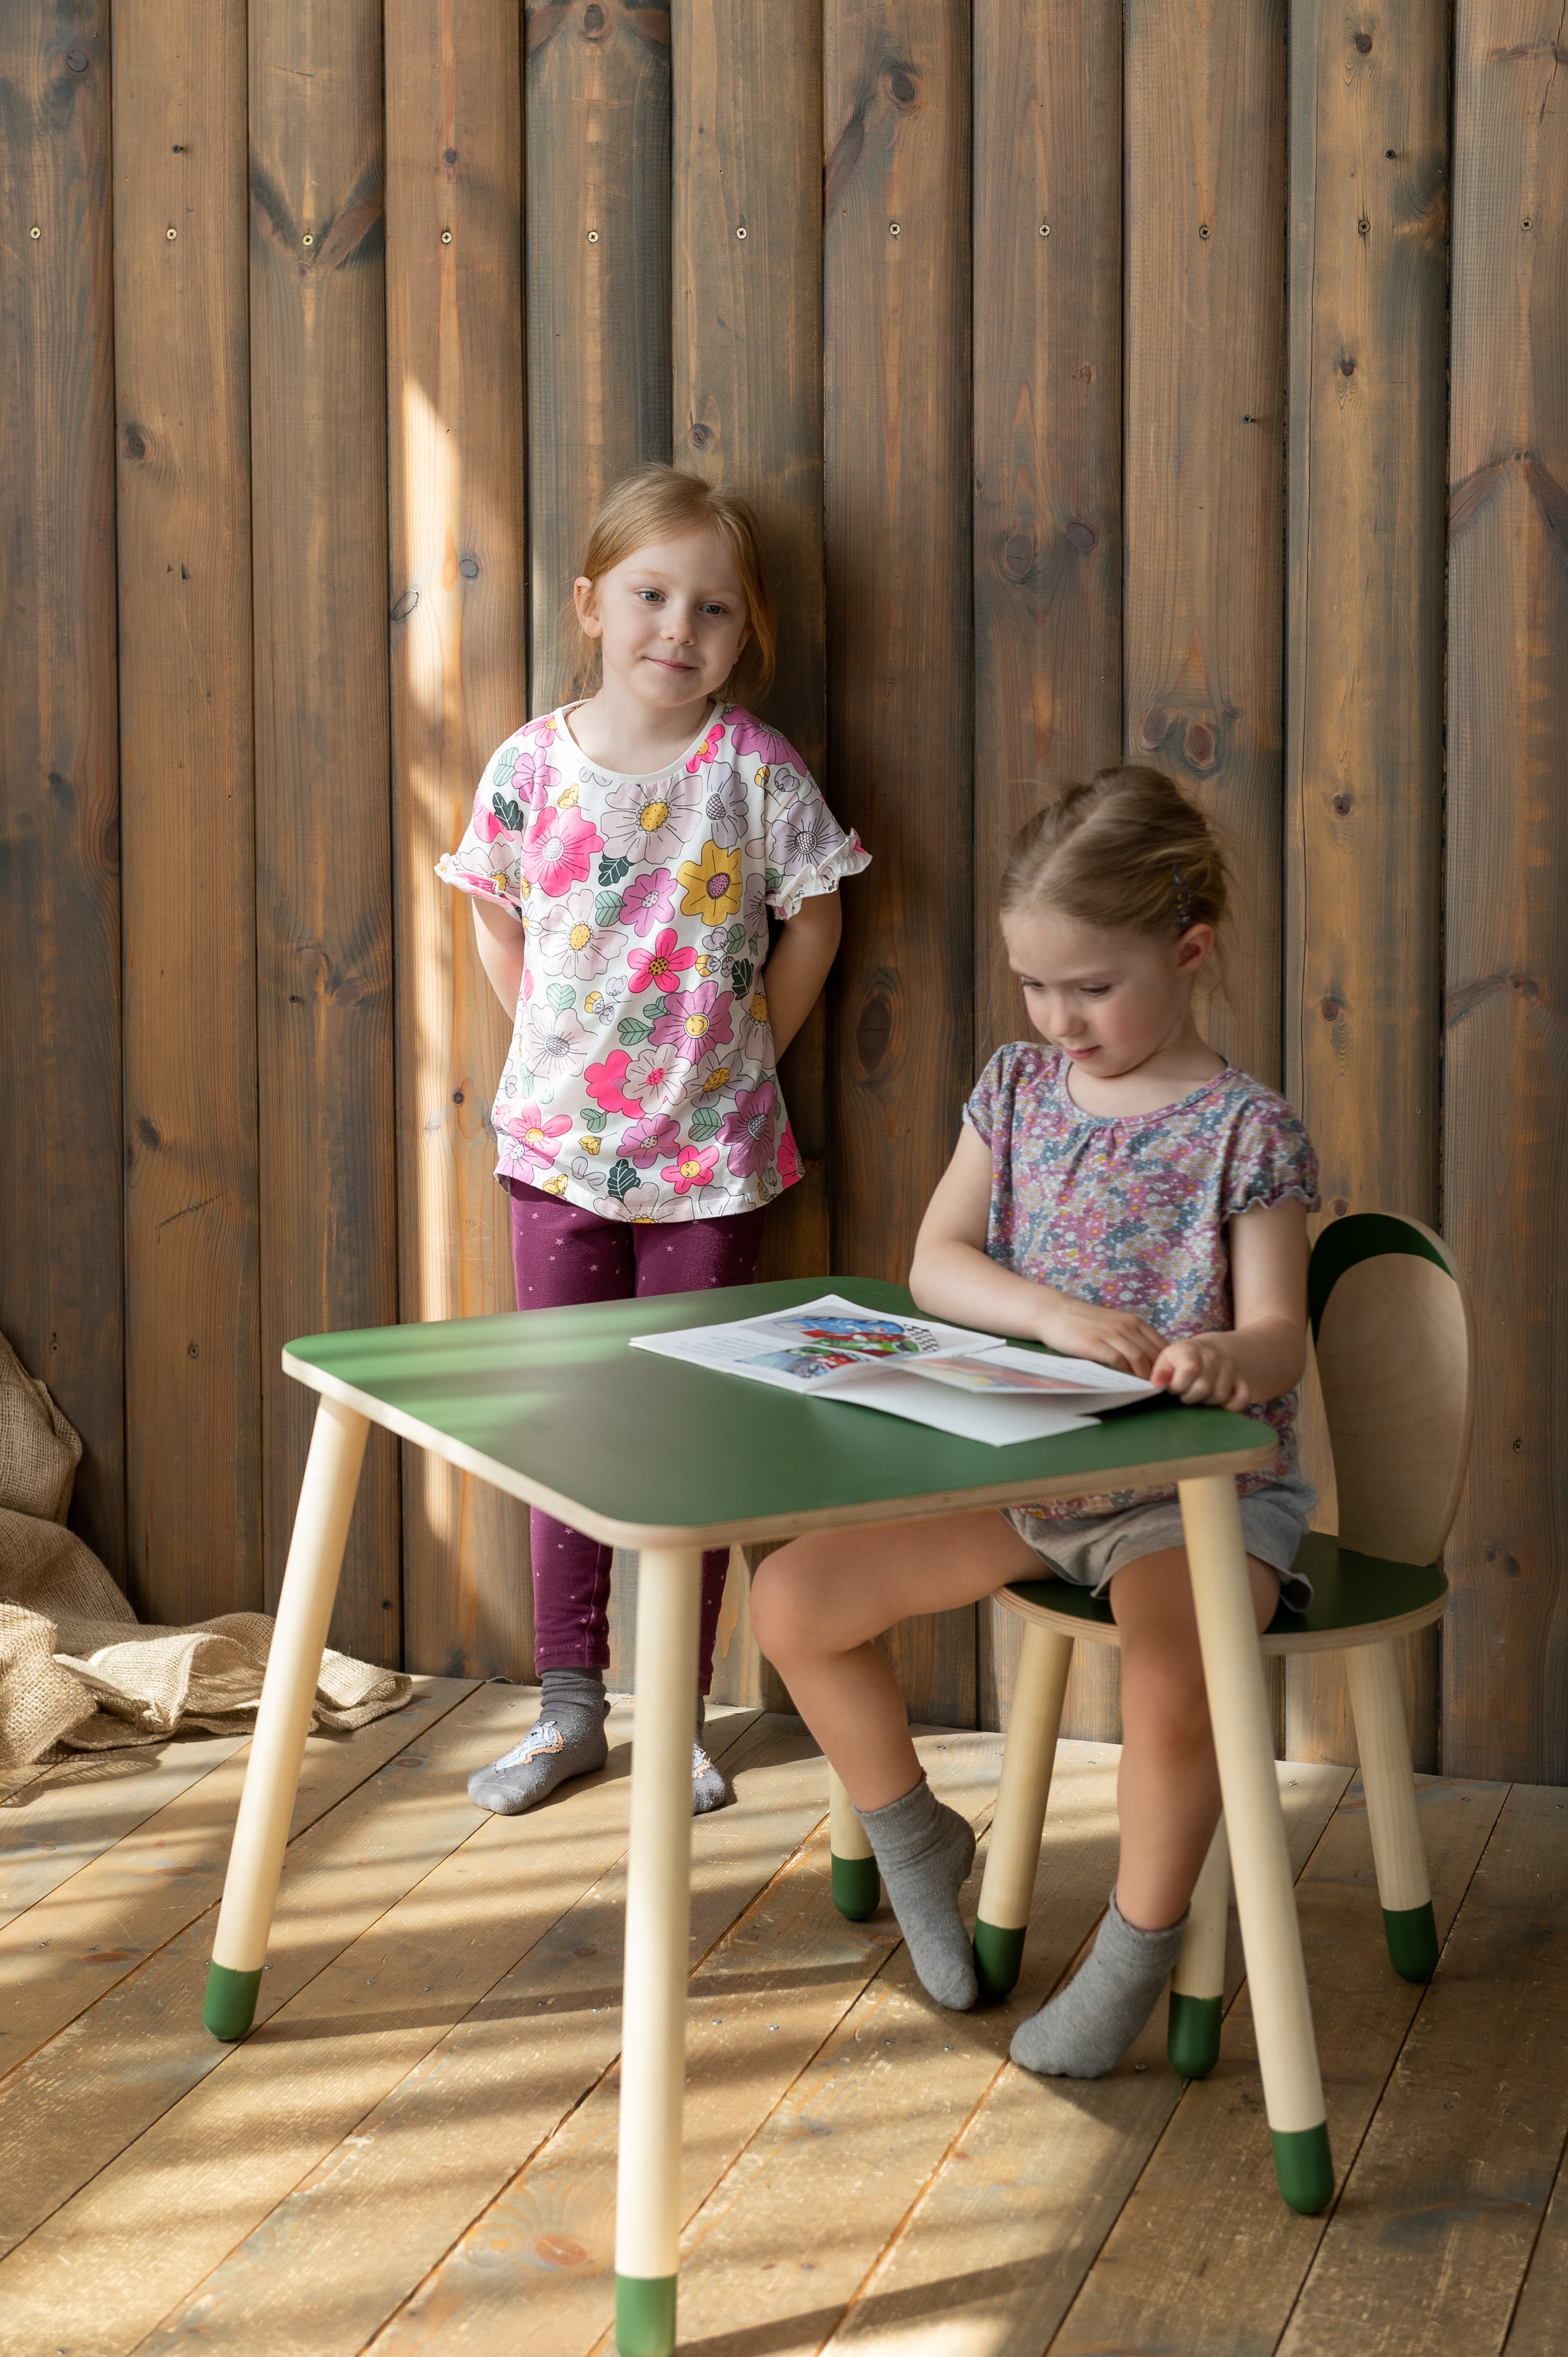 Ensemble table et 2 chaises enfant en bois blanc et naturel